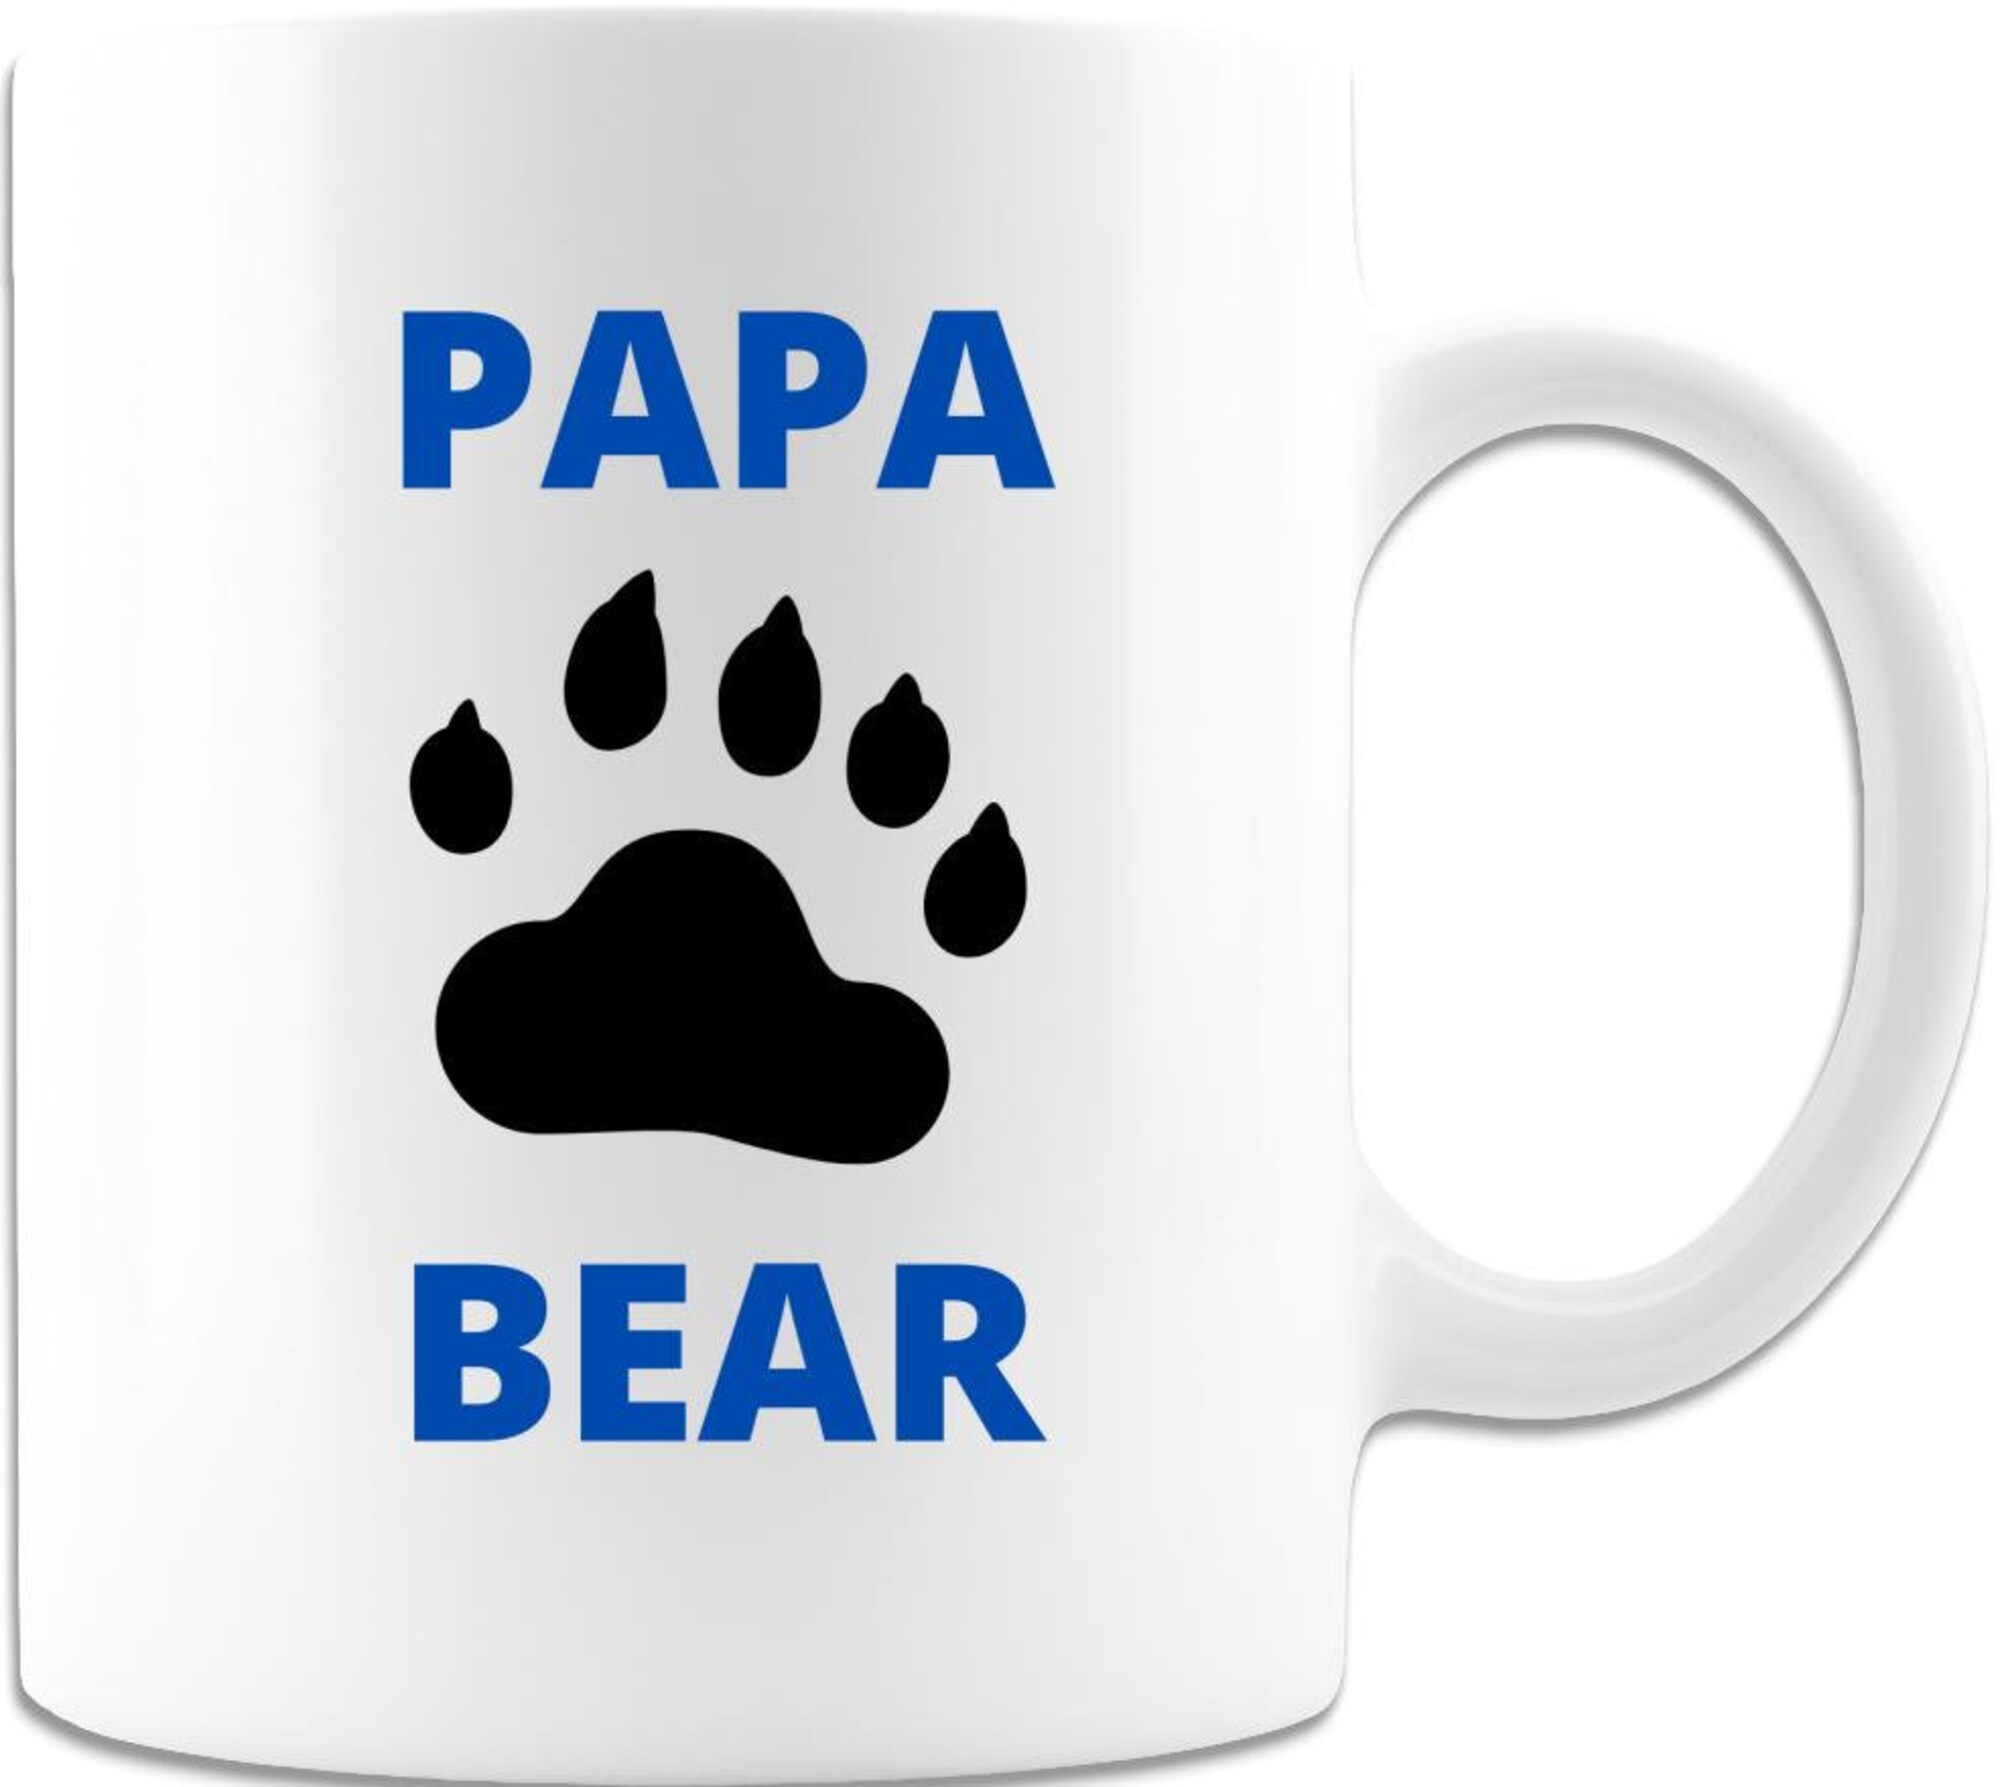 Discover Papa Bear - Caneca De Cerâmica Clássica Pata De Urso